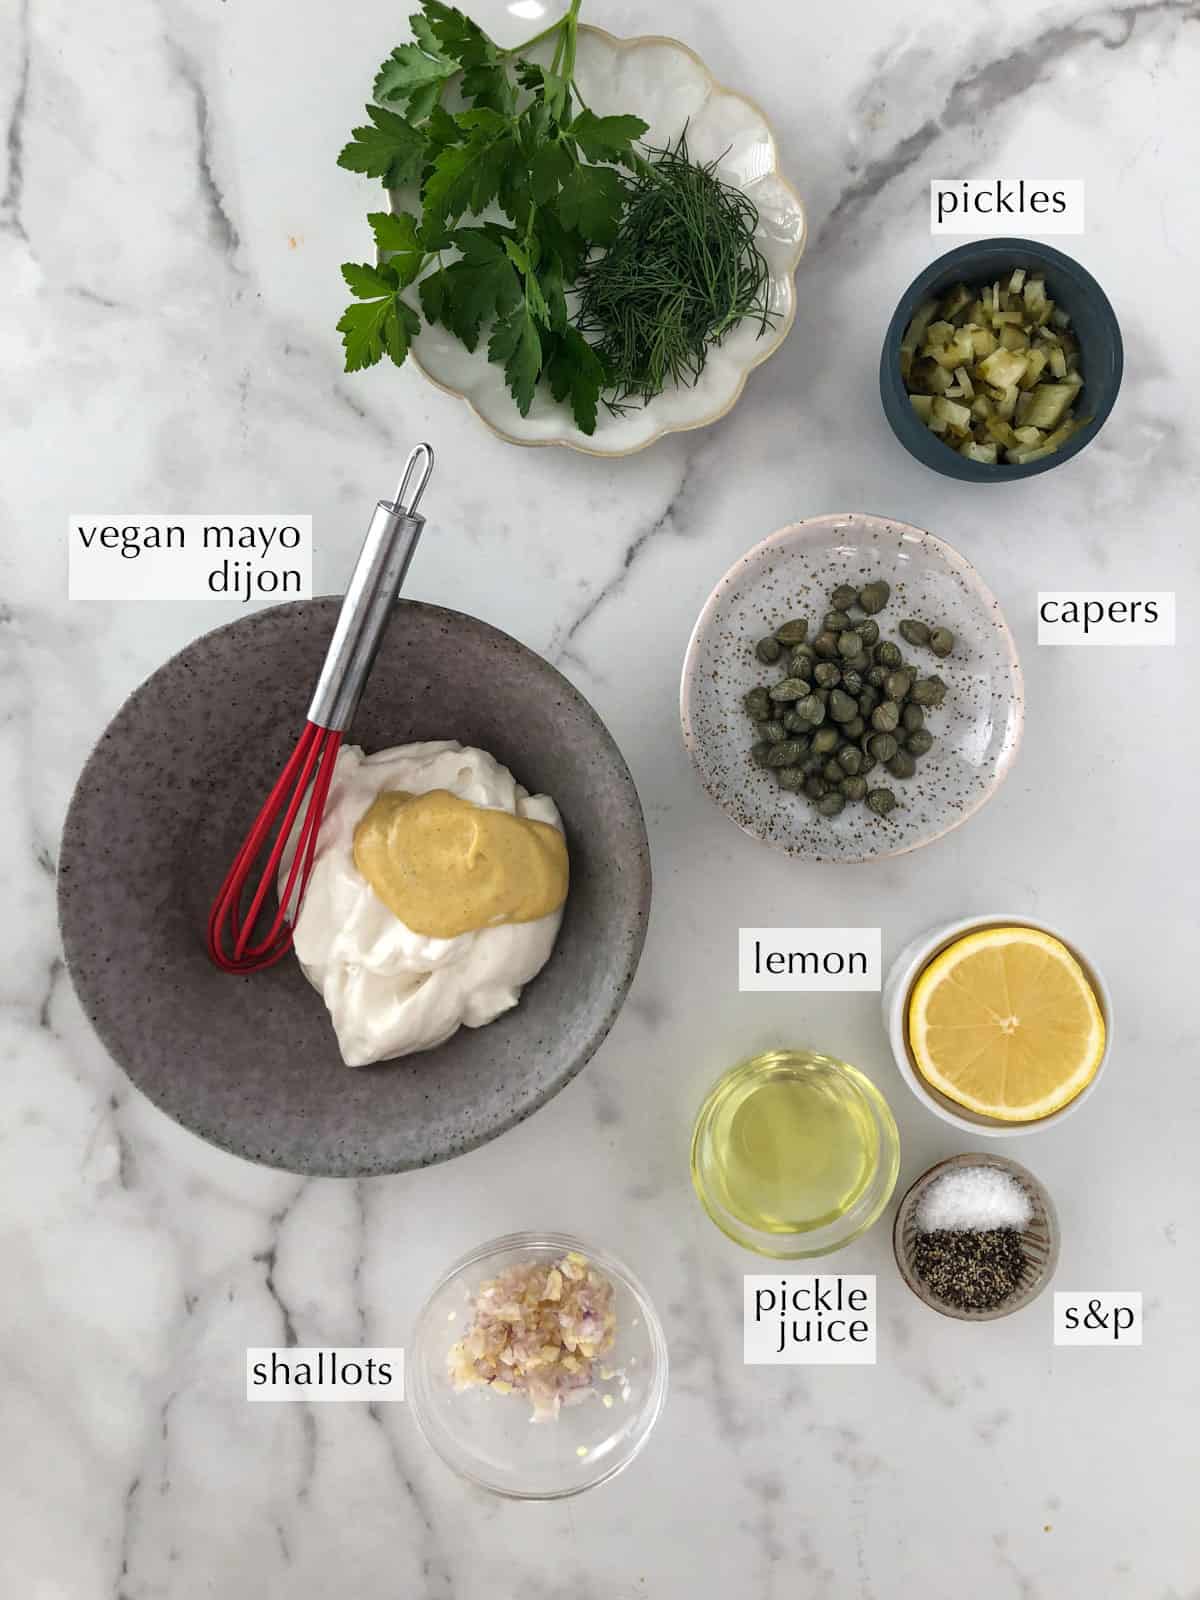 Bowls of ingredients for vegan tartar sauce like vegan mayo, mustard and pickles.